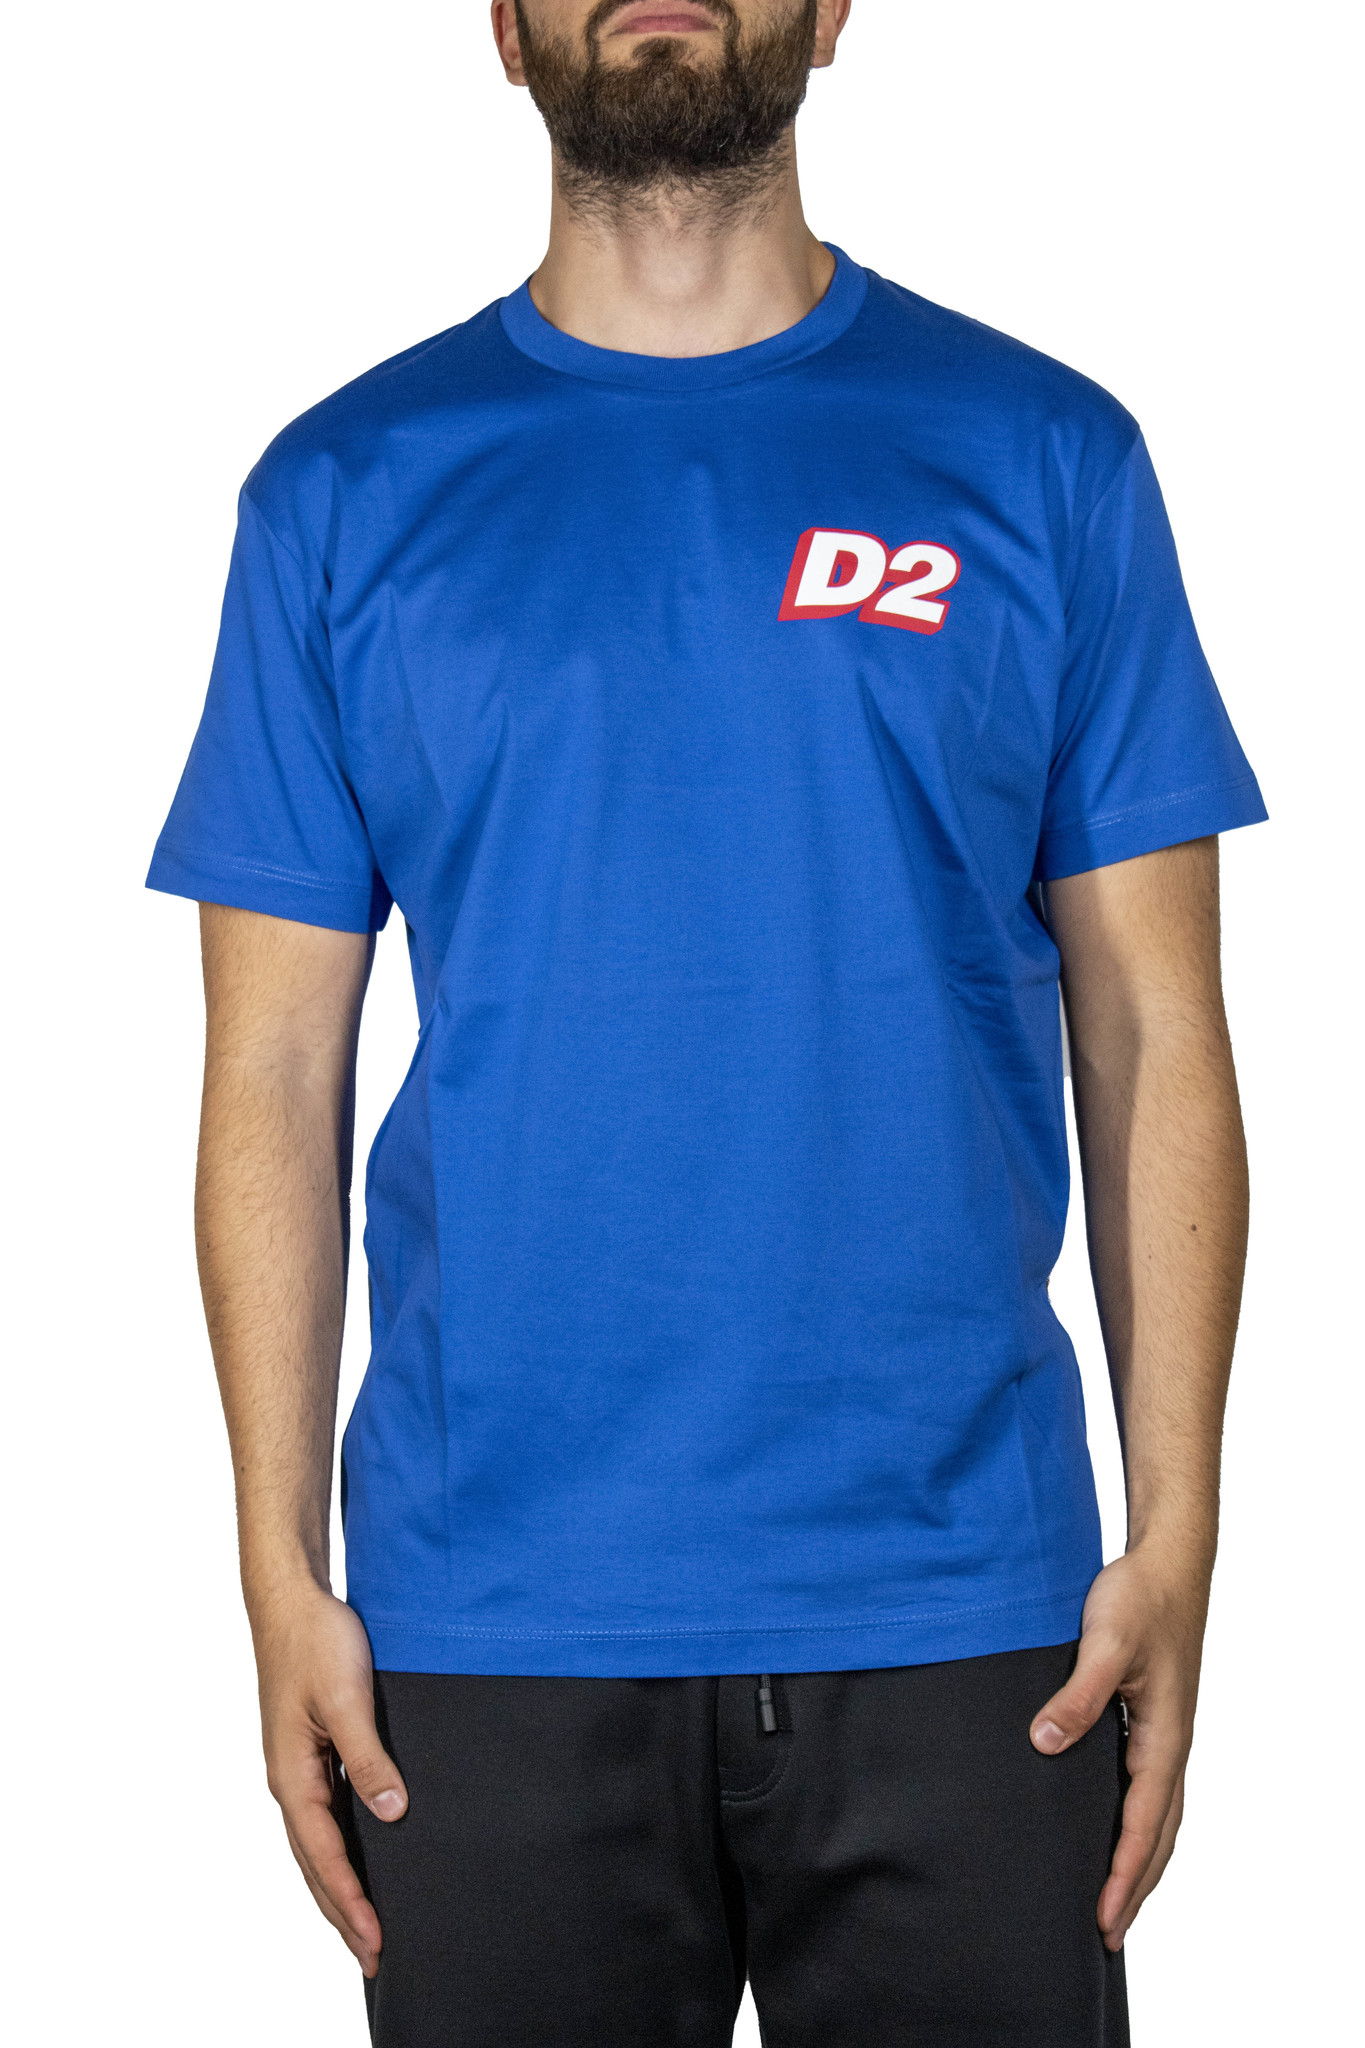 Gaan Bukken Bestaan Dsquared2 D2 T-Shirt Blue - Merkmode